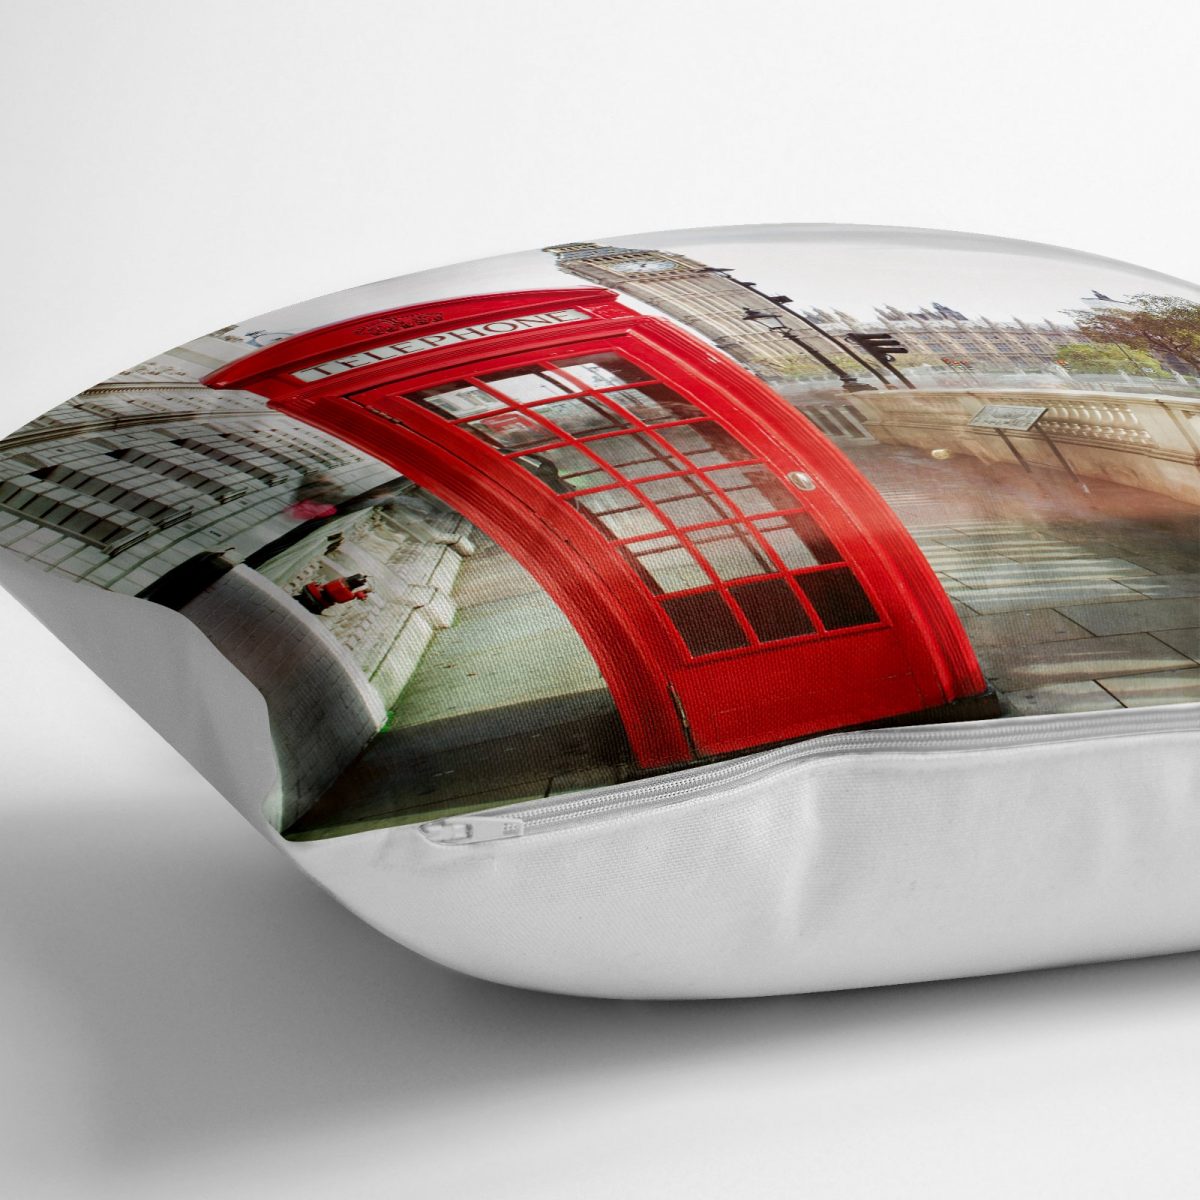 London Kırmızı Telefon Tasarımlı Dekoratif Yer Minderi - 70 x 70 cm Realhomes